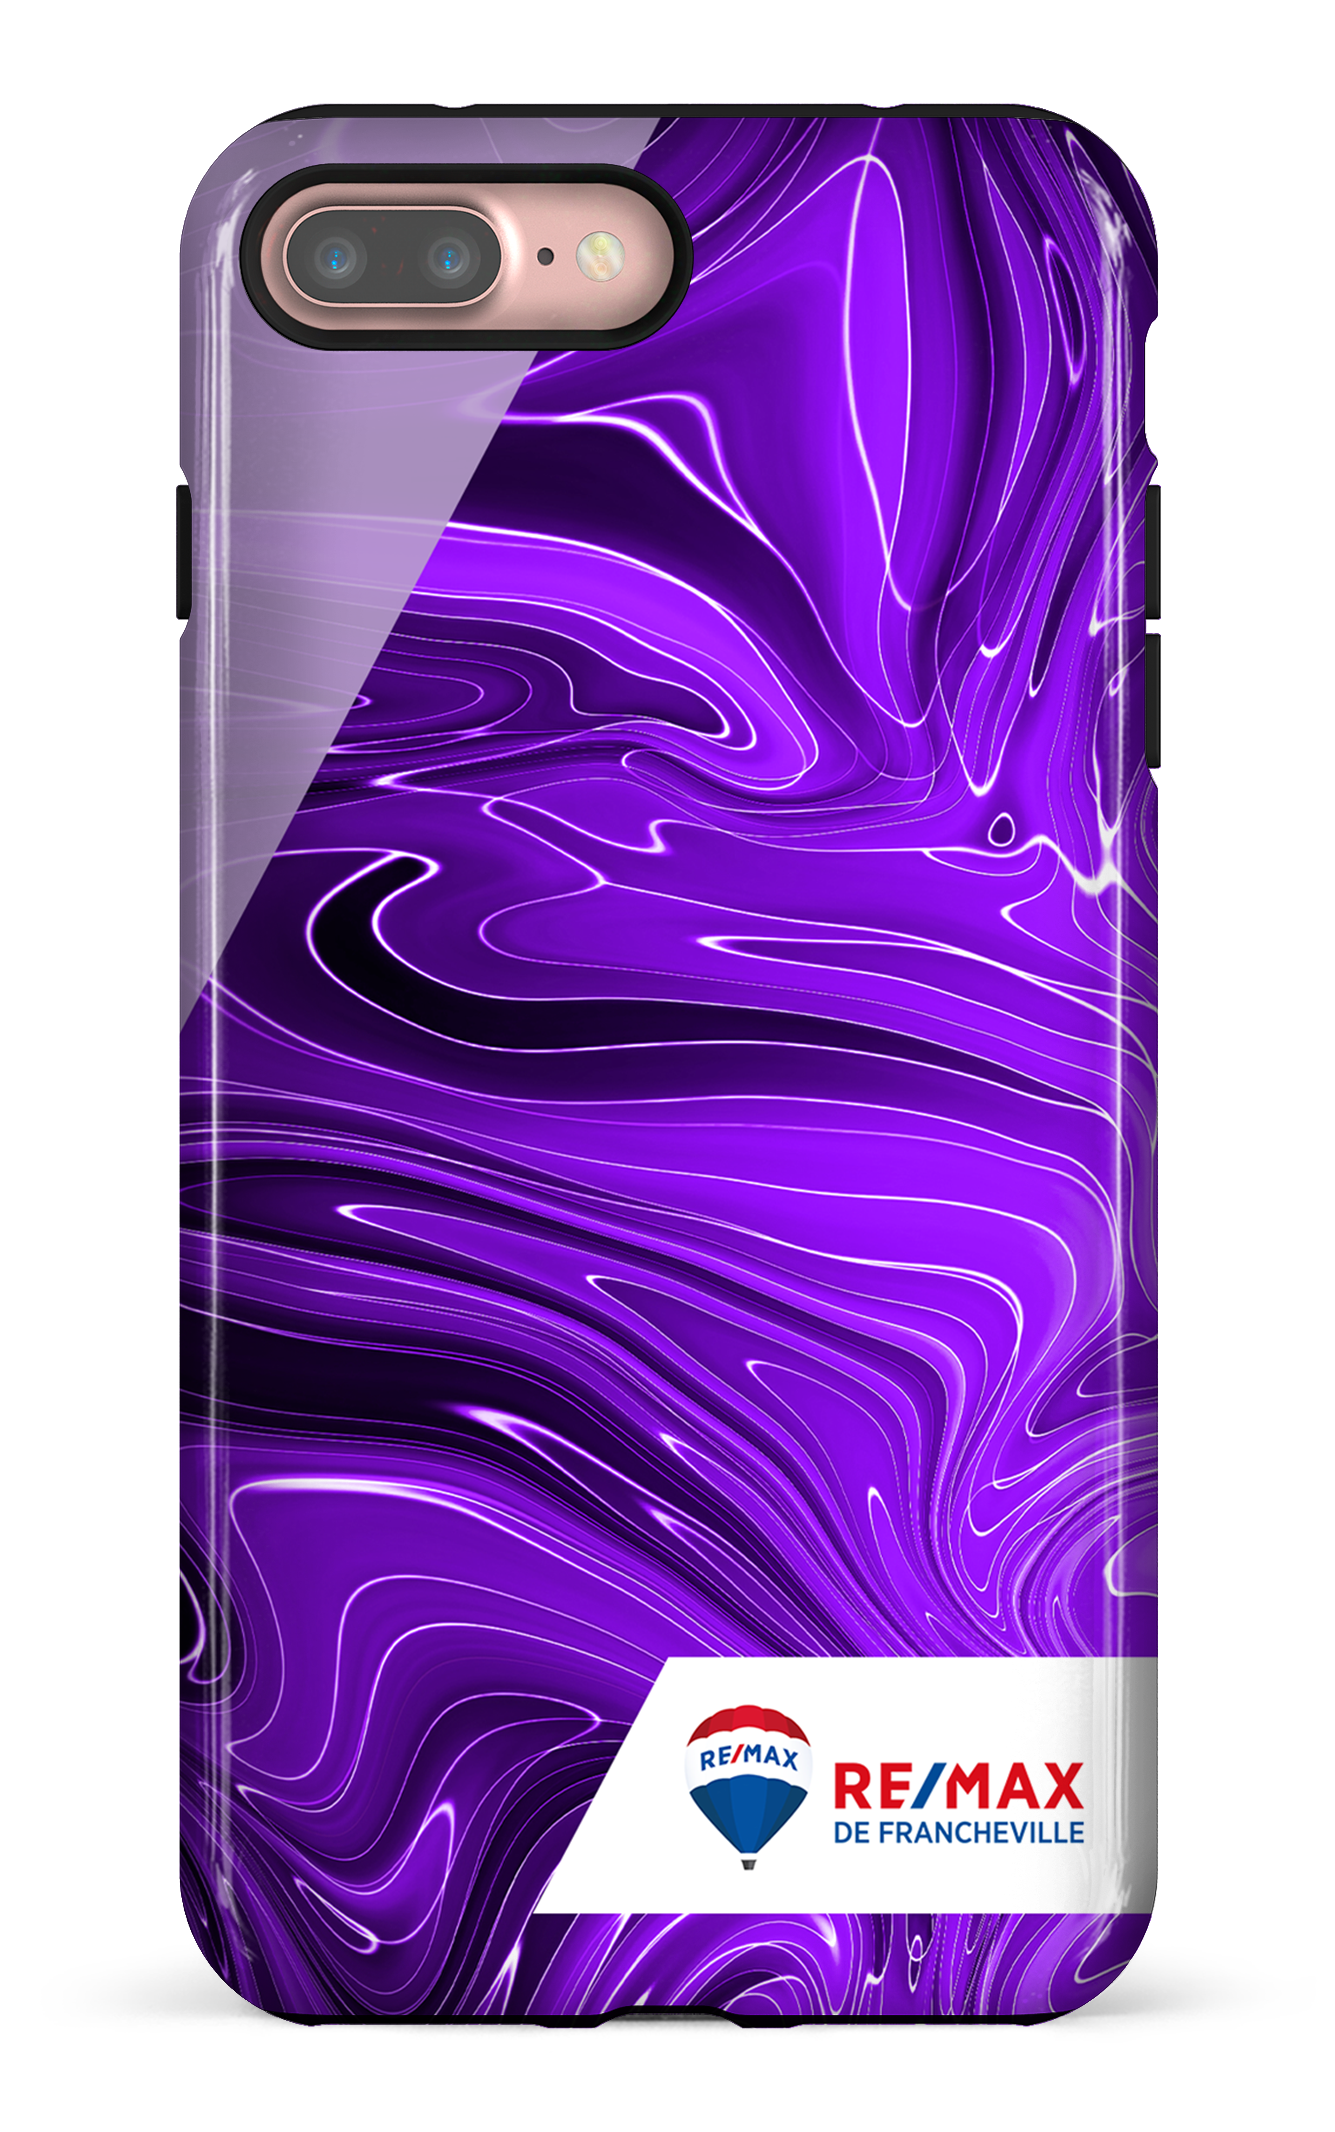 Peinture marbrée sombre violette de Francheville - iPhone 7 Plus